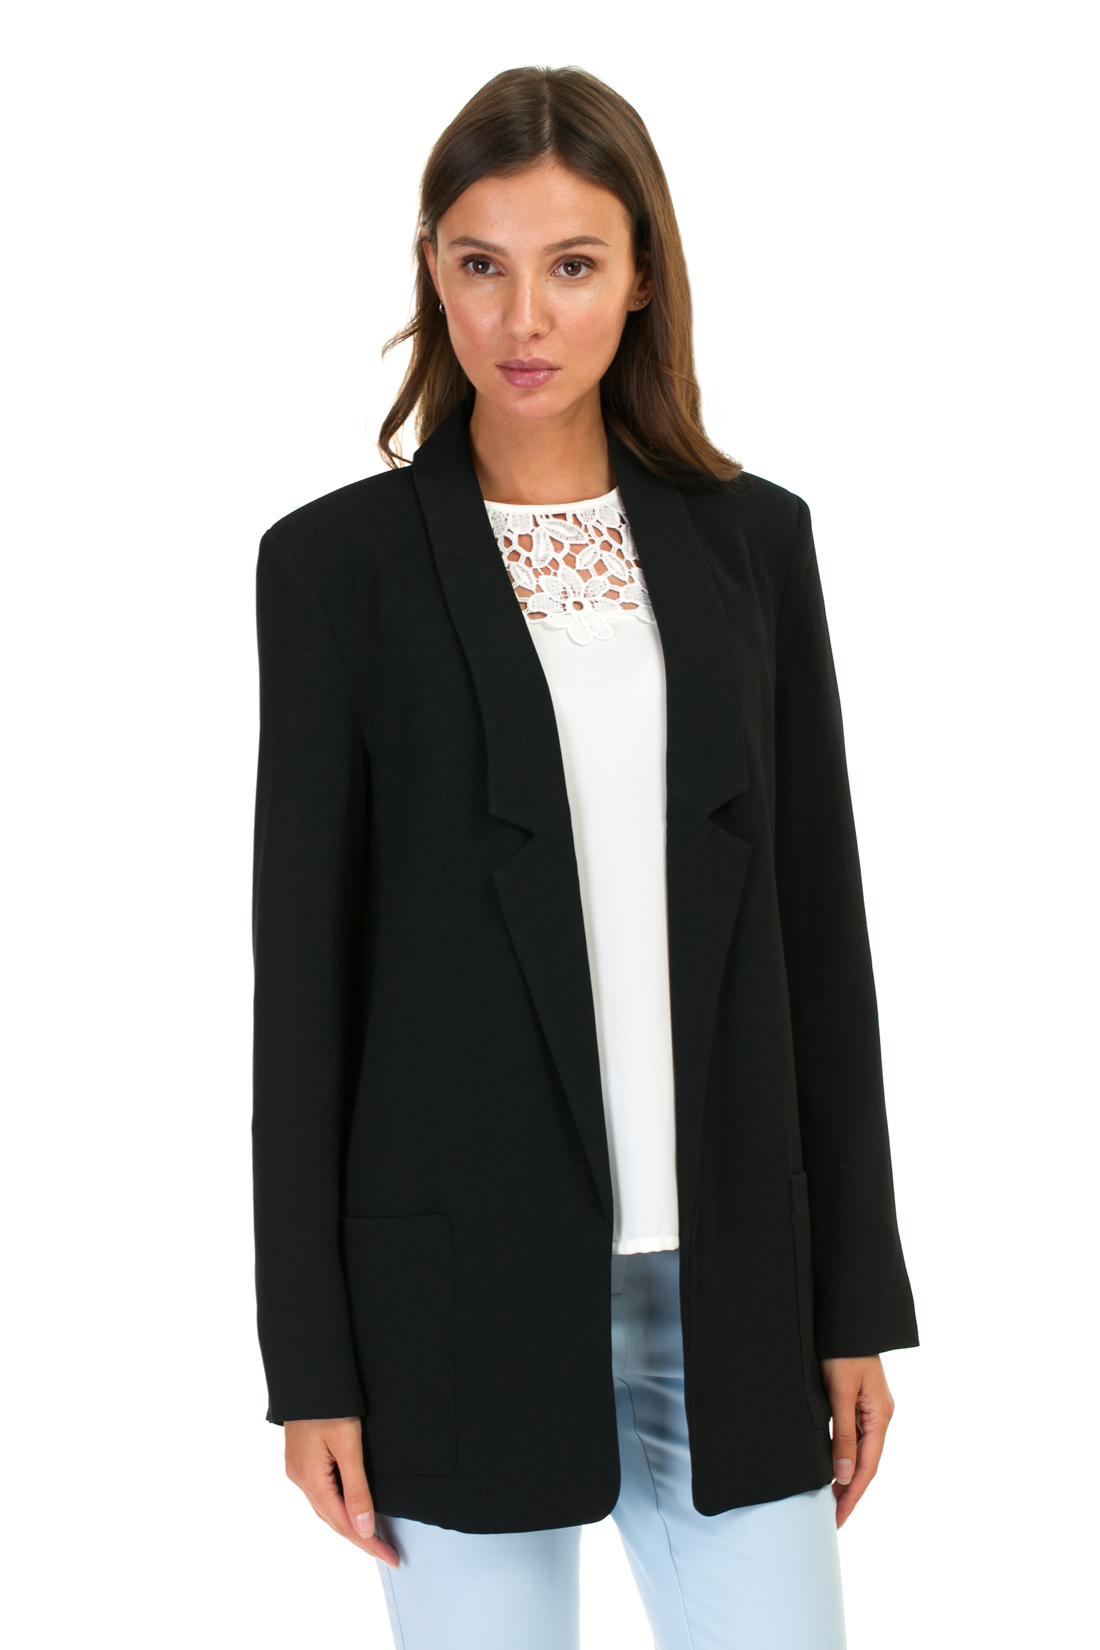 Удлинённый пиджак (арт. baon B127004), размер XXL, цвет черный Удлинённый пиджак (арт. baon B127004) - фото 1